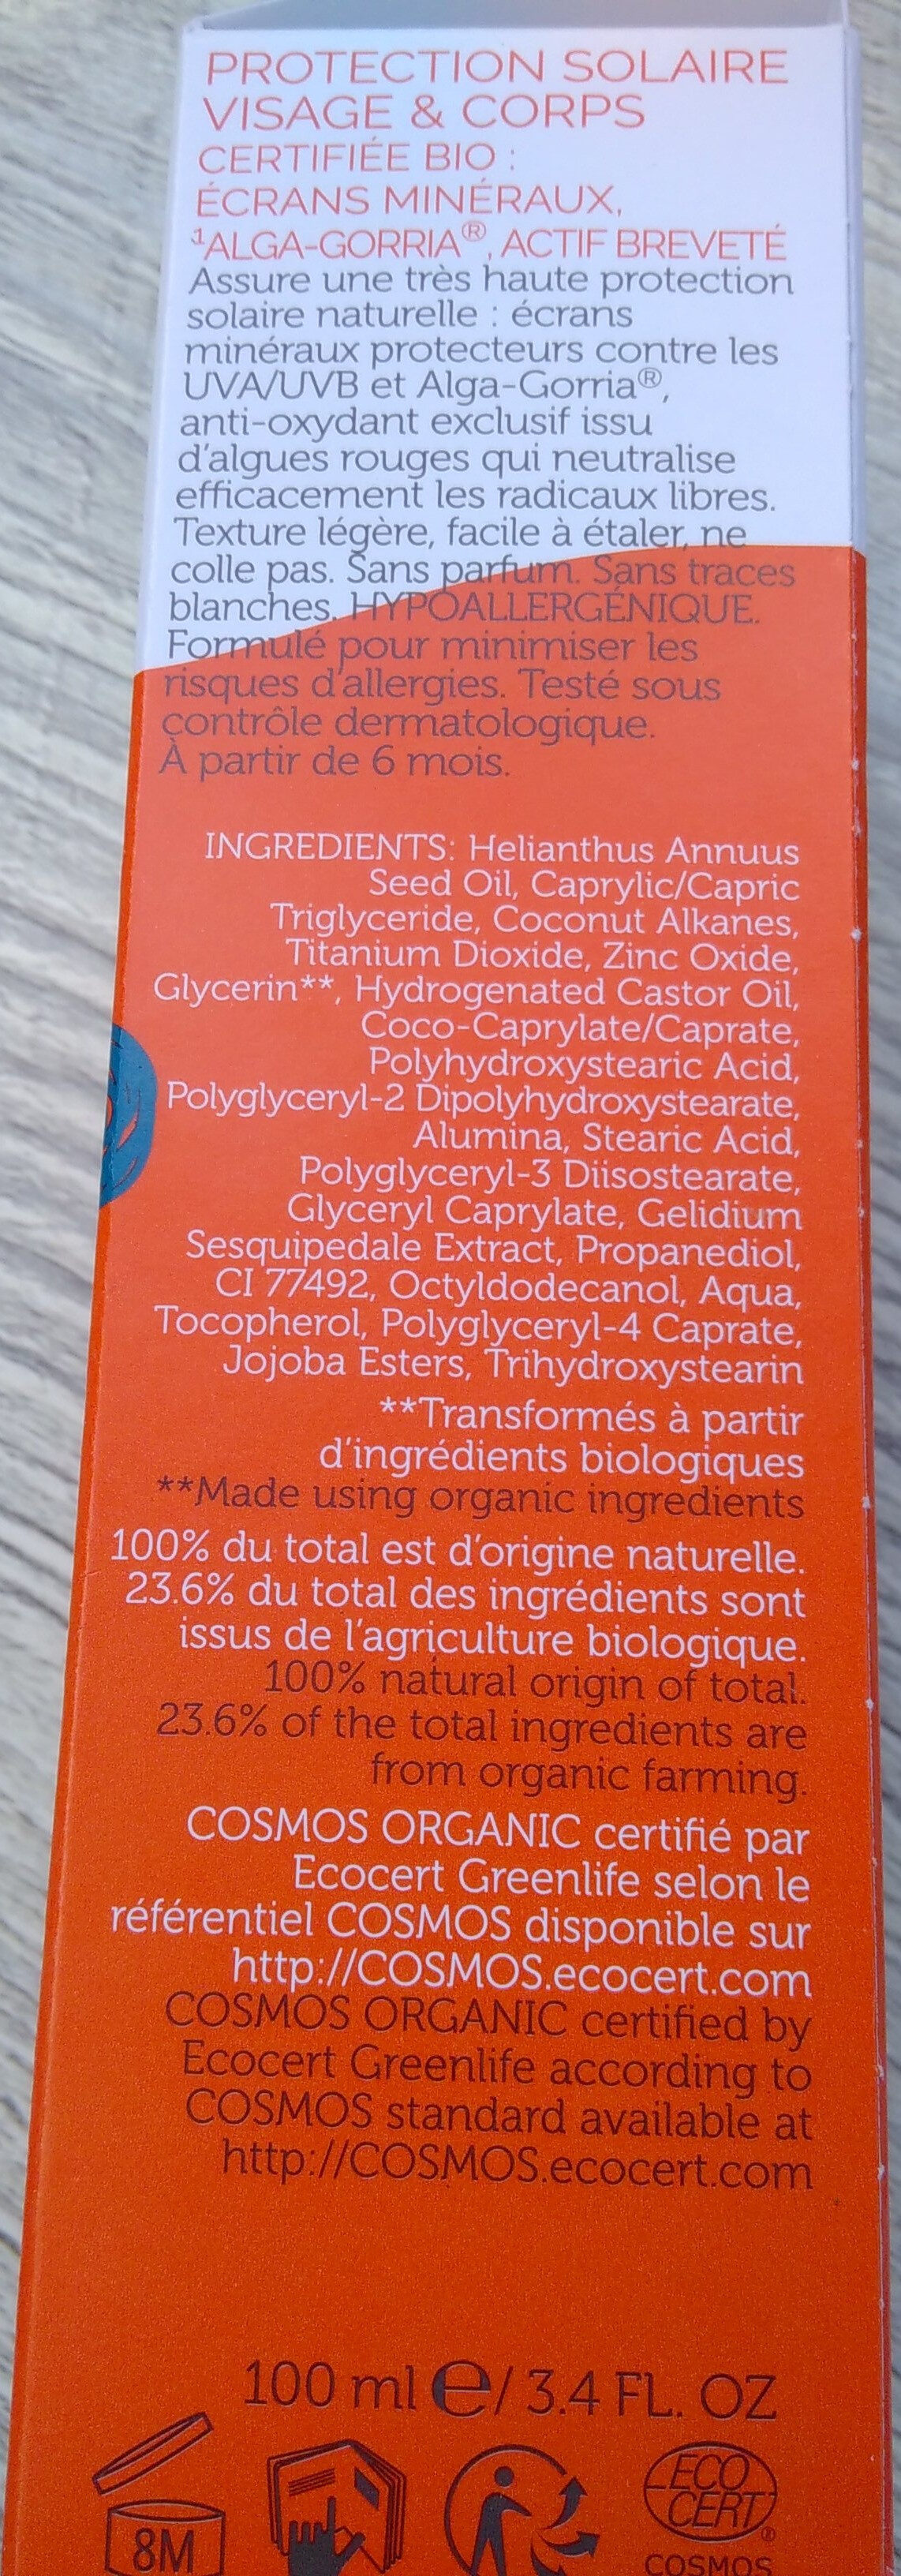 crème solaire - Ingredients - fr